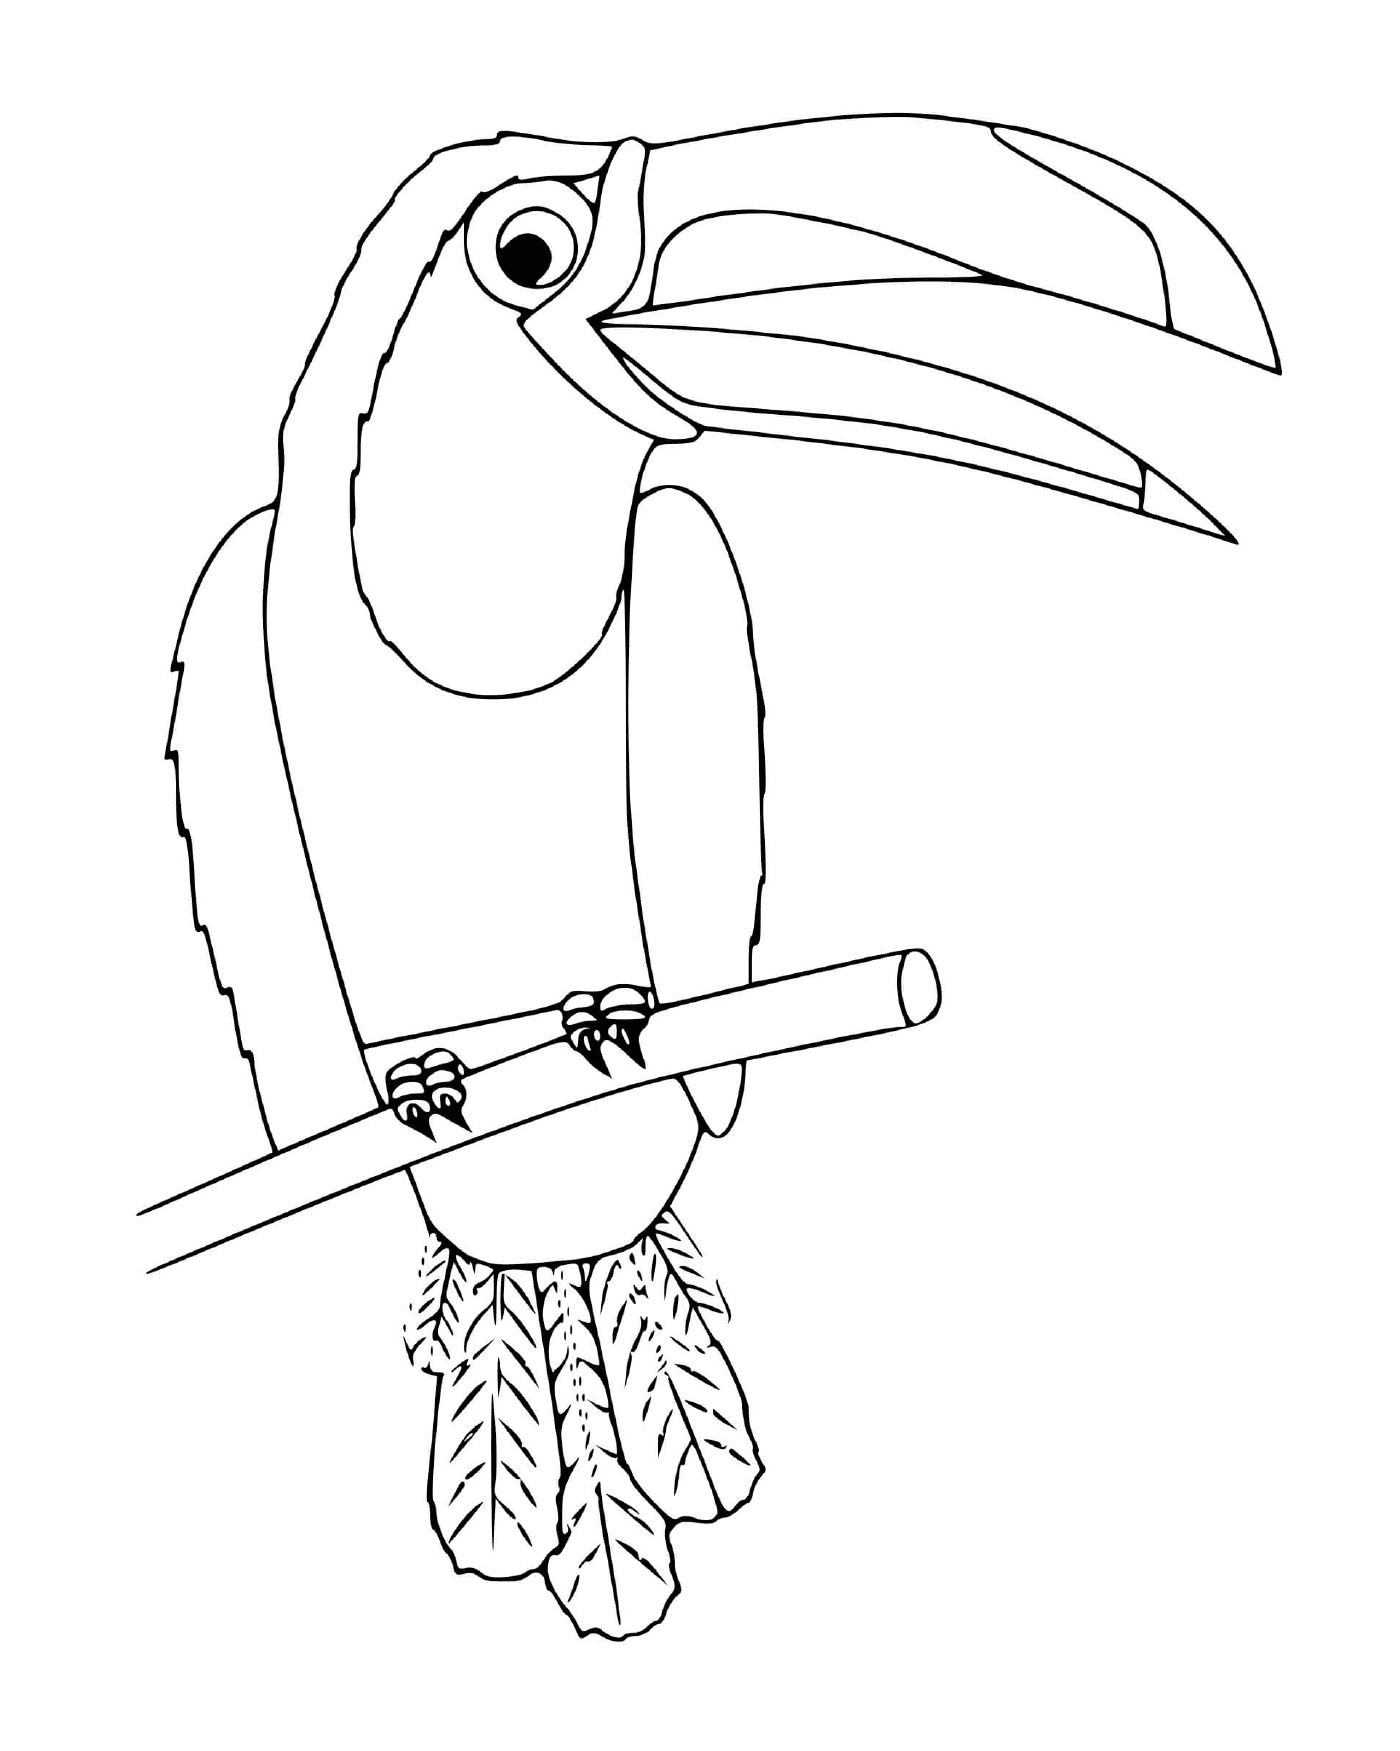  कोन, मेक्सिको के पक्षी 